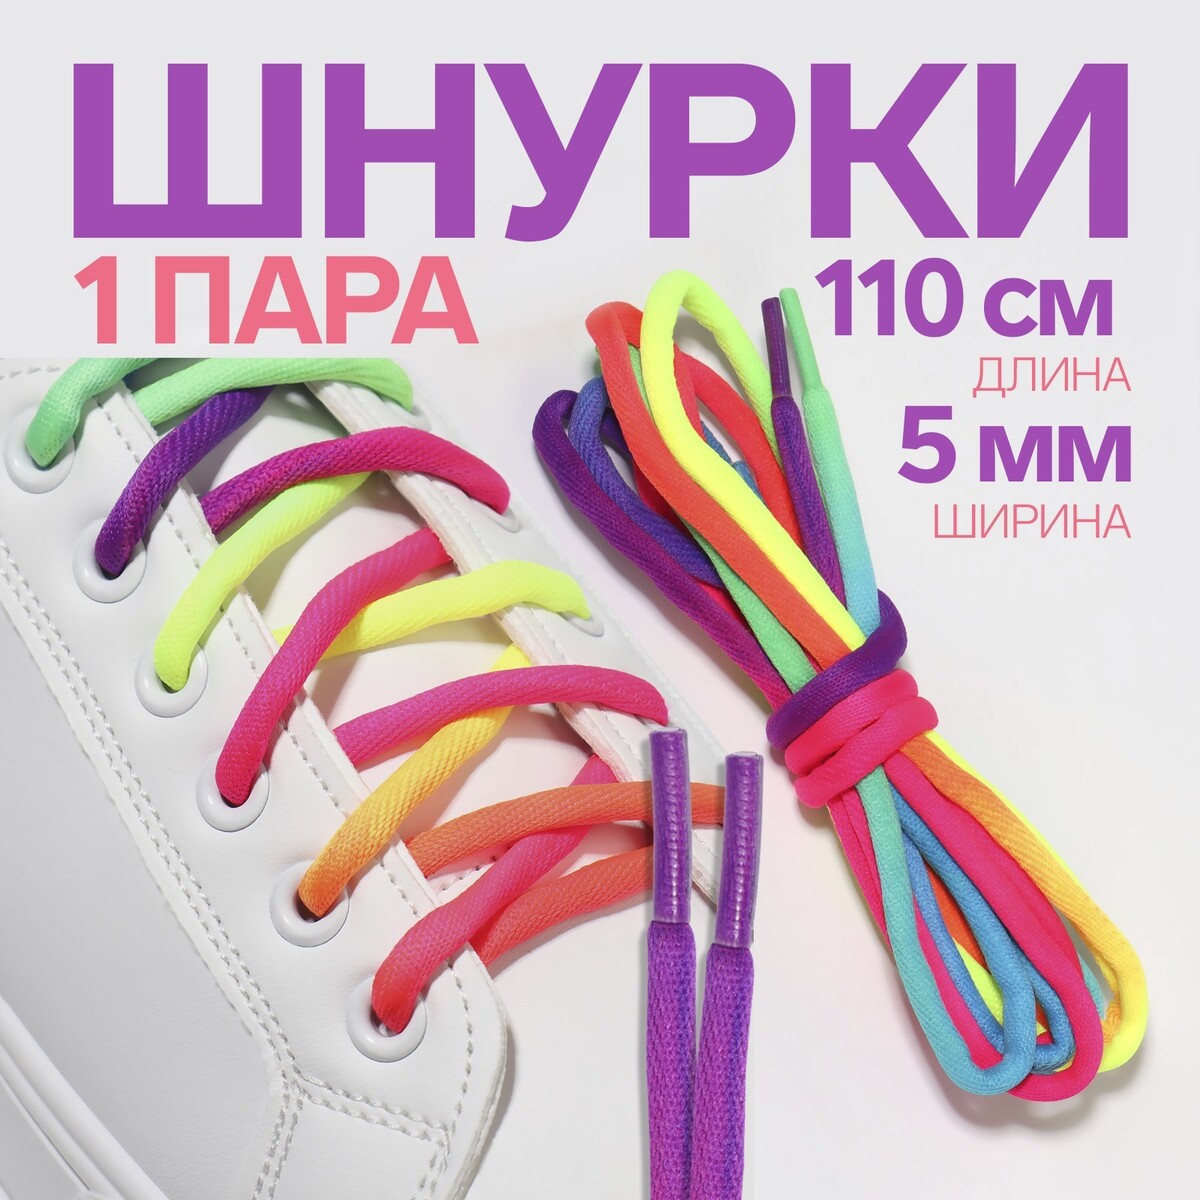 Шнурки для обуви, пара, круглые, d = 5 мм, 110 см, цвет